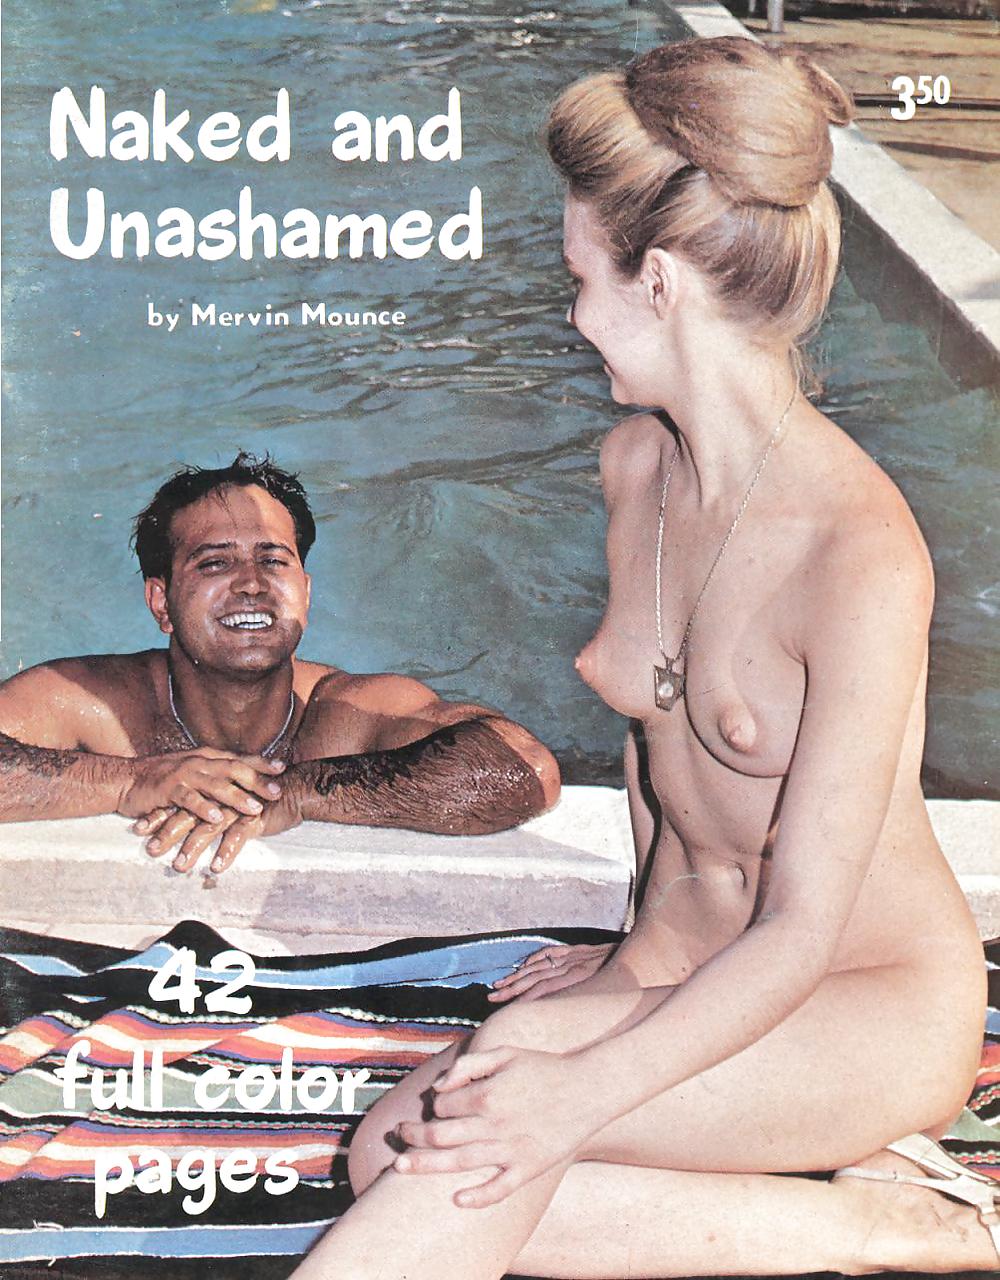 Desnudo y sin vergüenza - revista nudista vintage
 #24241585